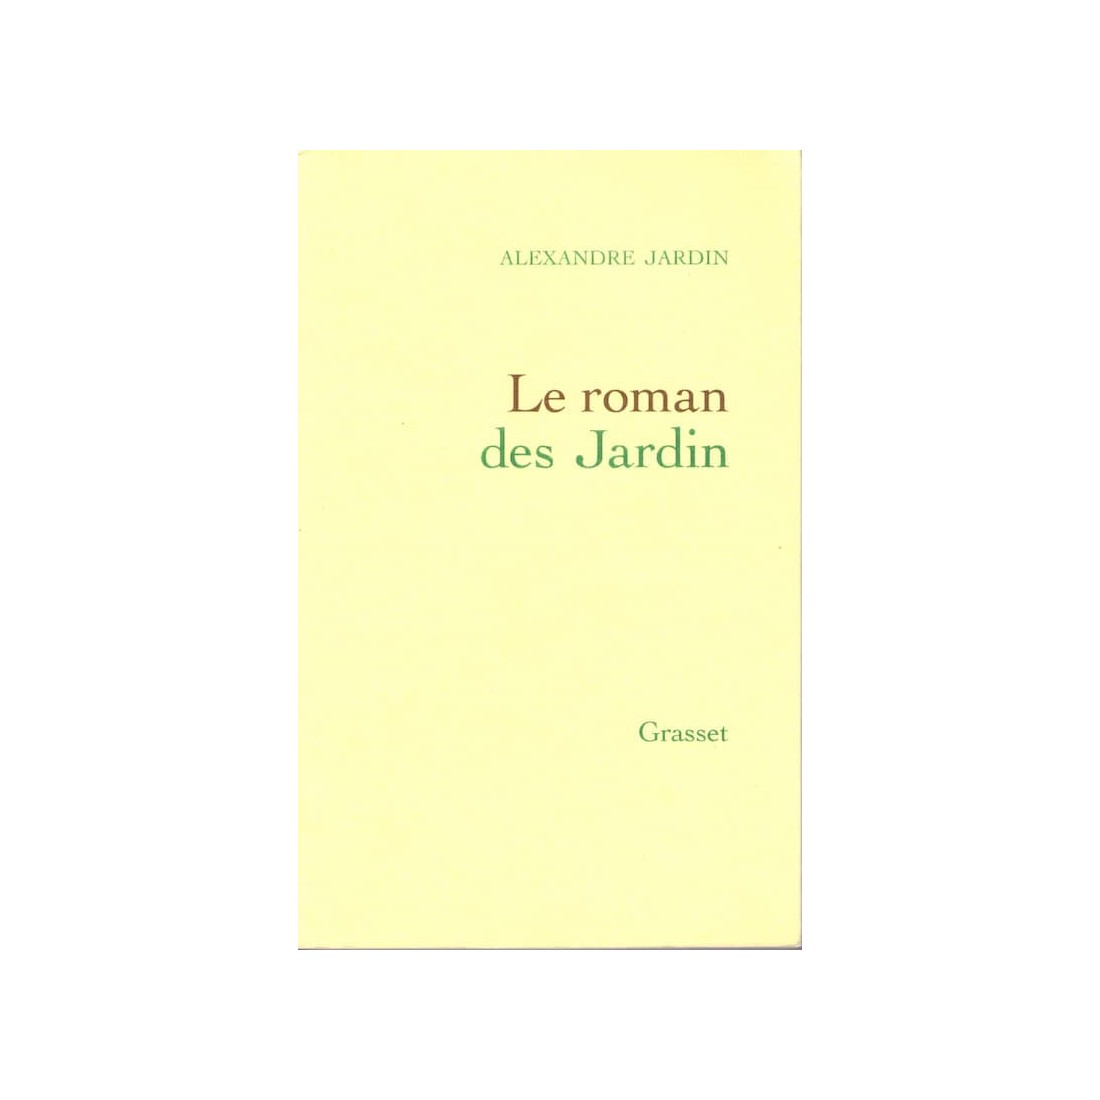 Le roman des Jardin - Roman de Alexandre Jardin - Ocazlivres.com